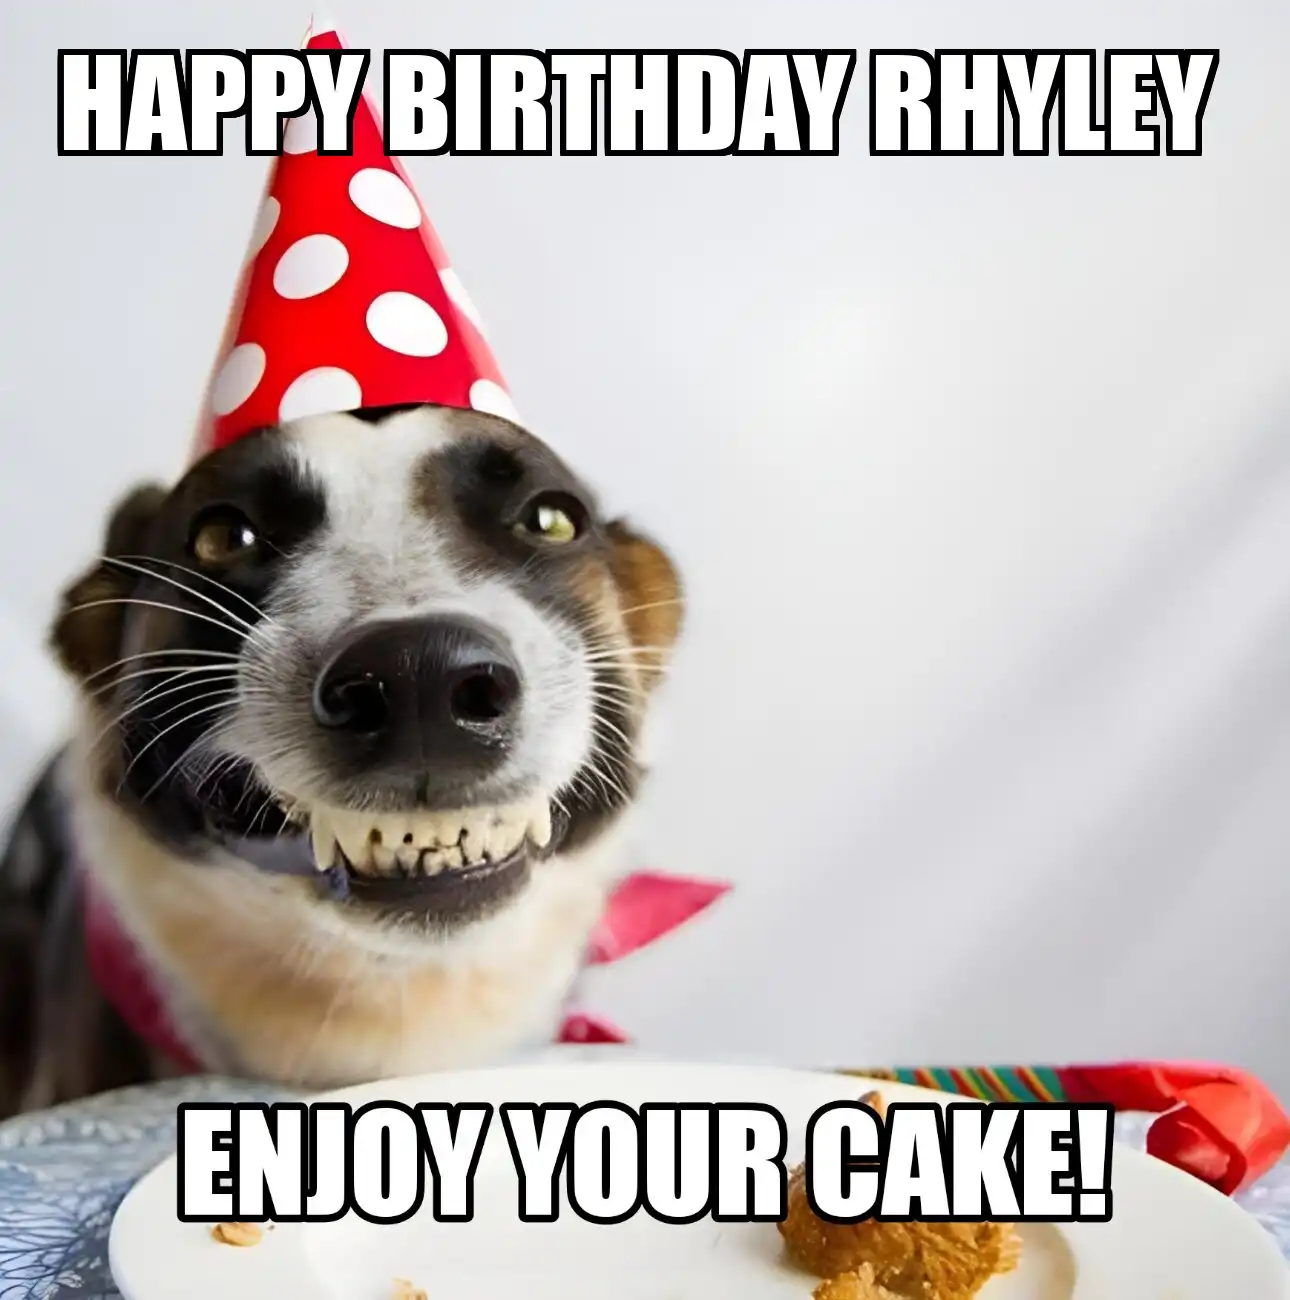 Happy Birthday Rhyley Enjoy Your Cake Dog Meme